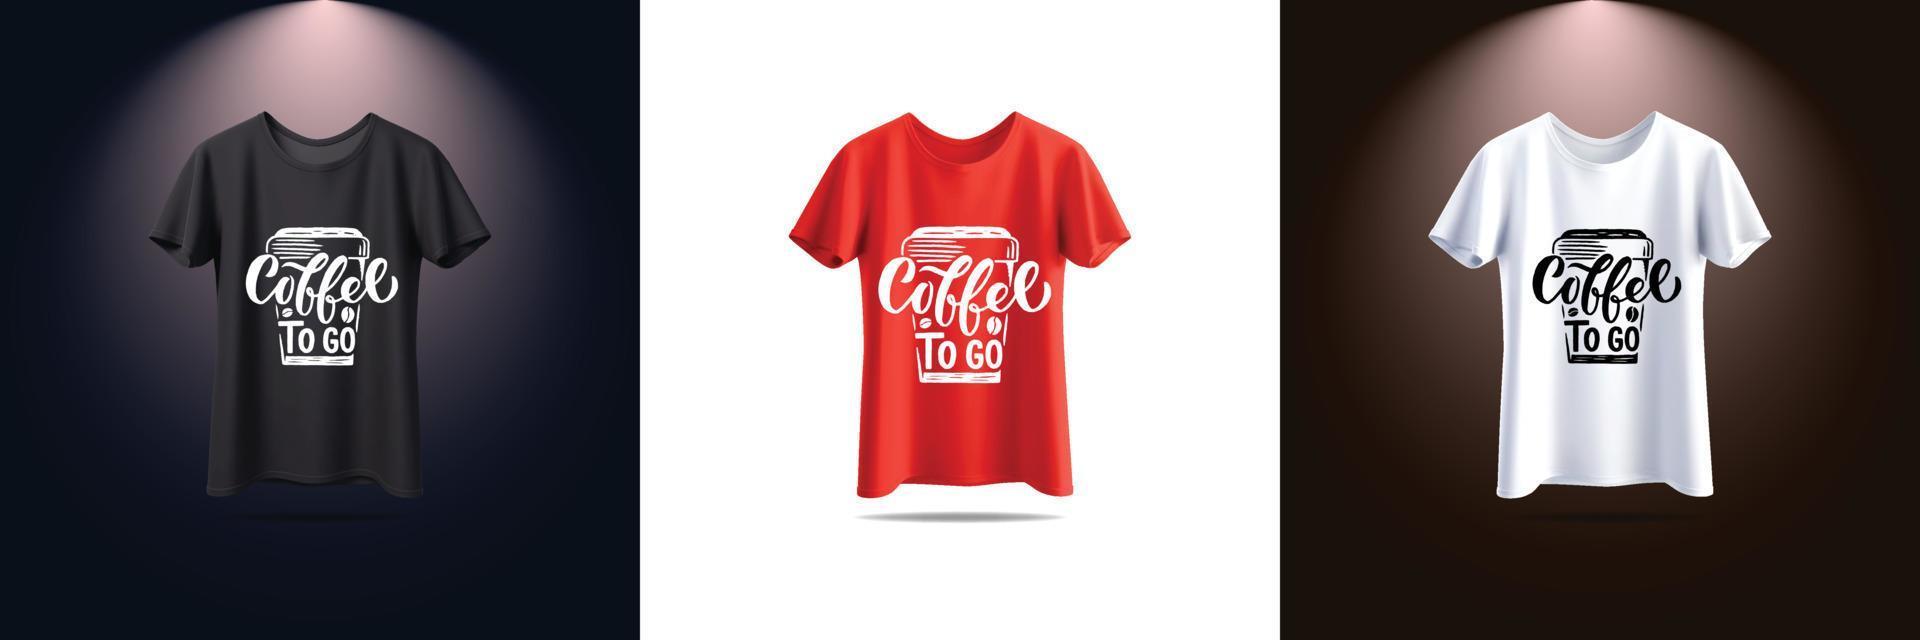 New t shirt design vector t shirt design vintage gaming t shirt design typography gaming t shirt